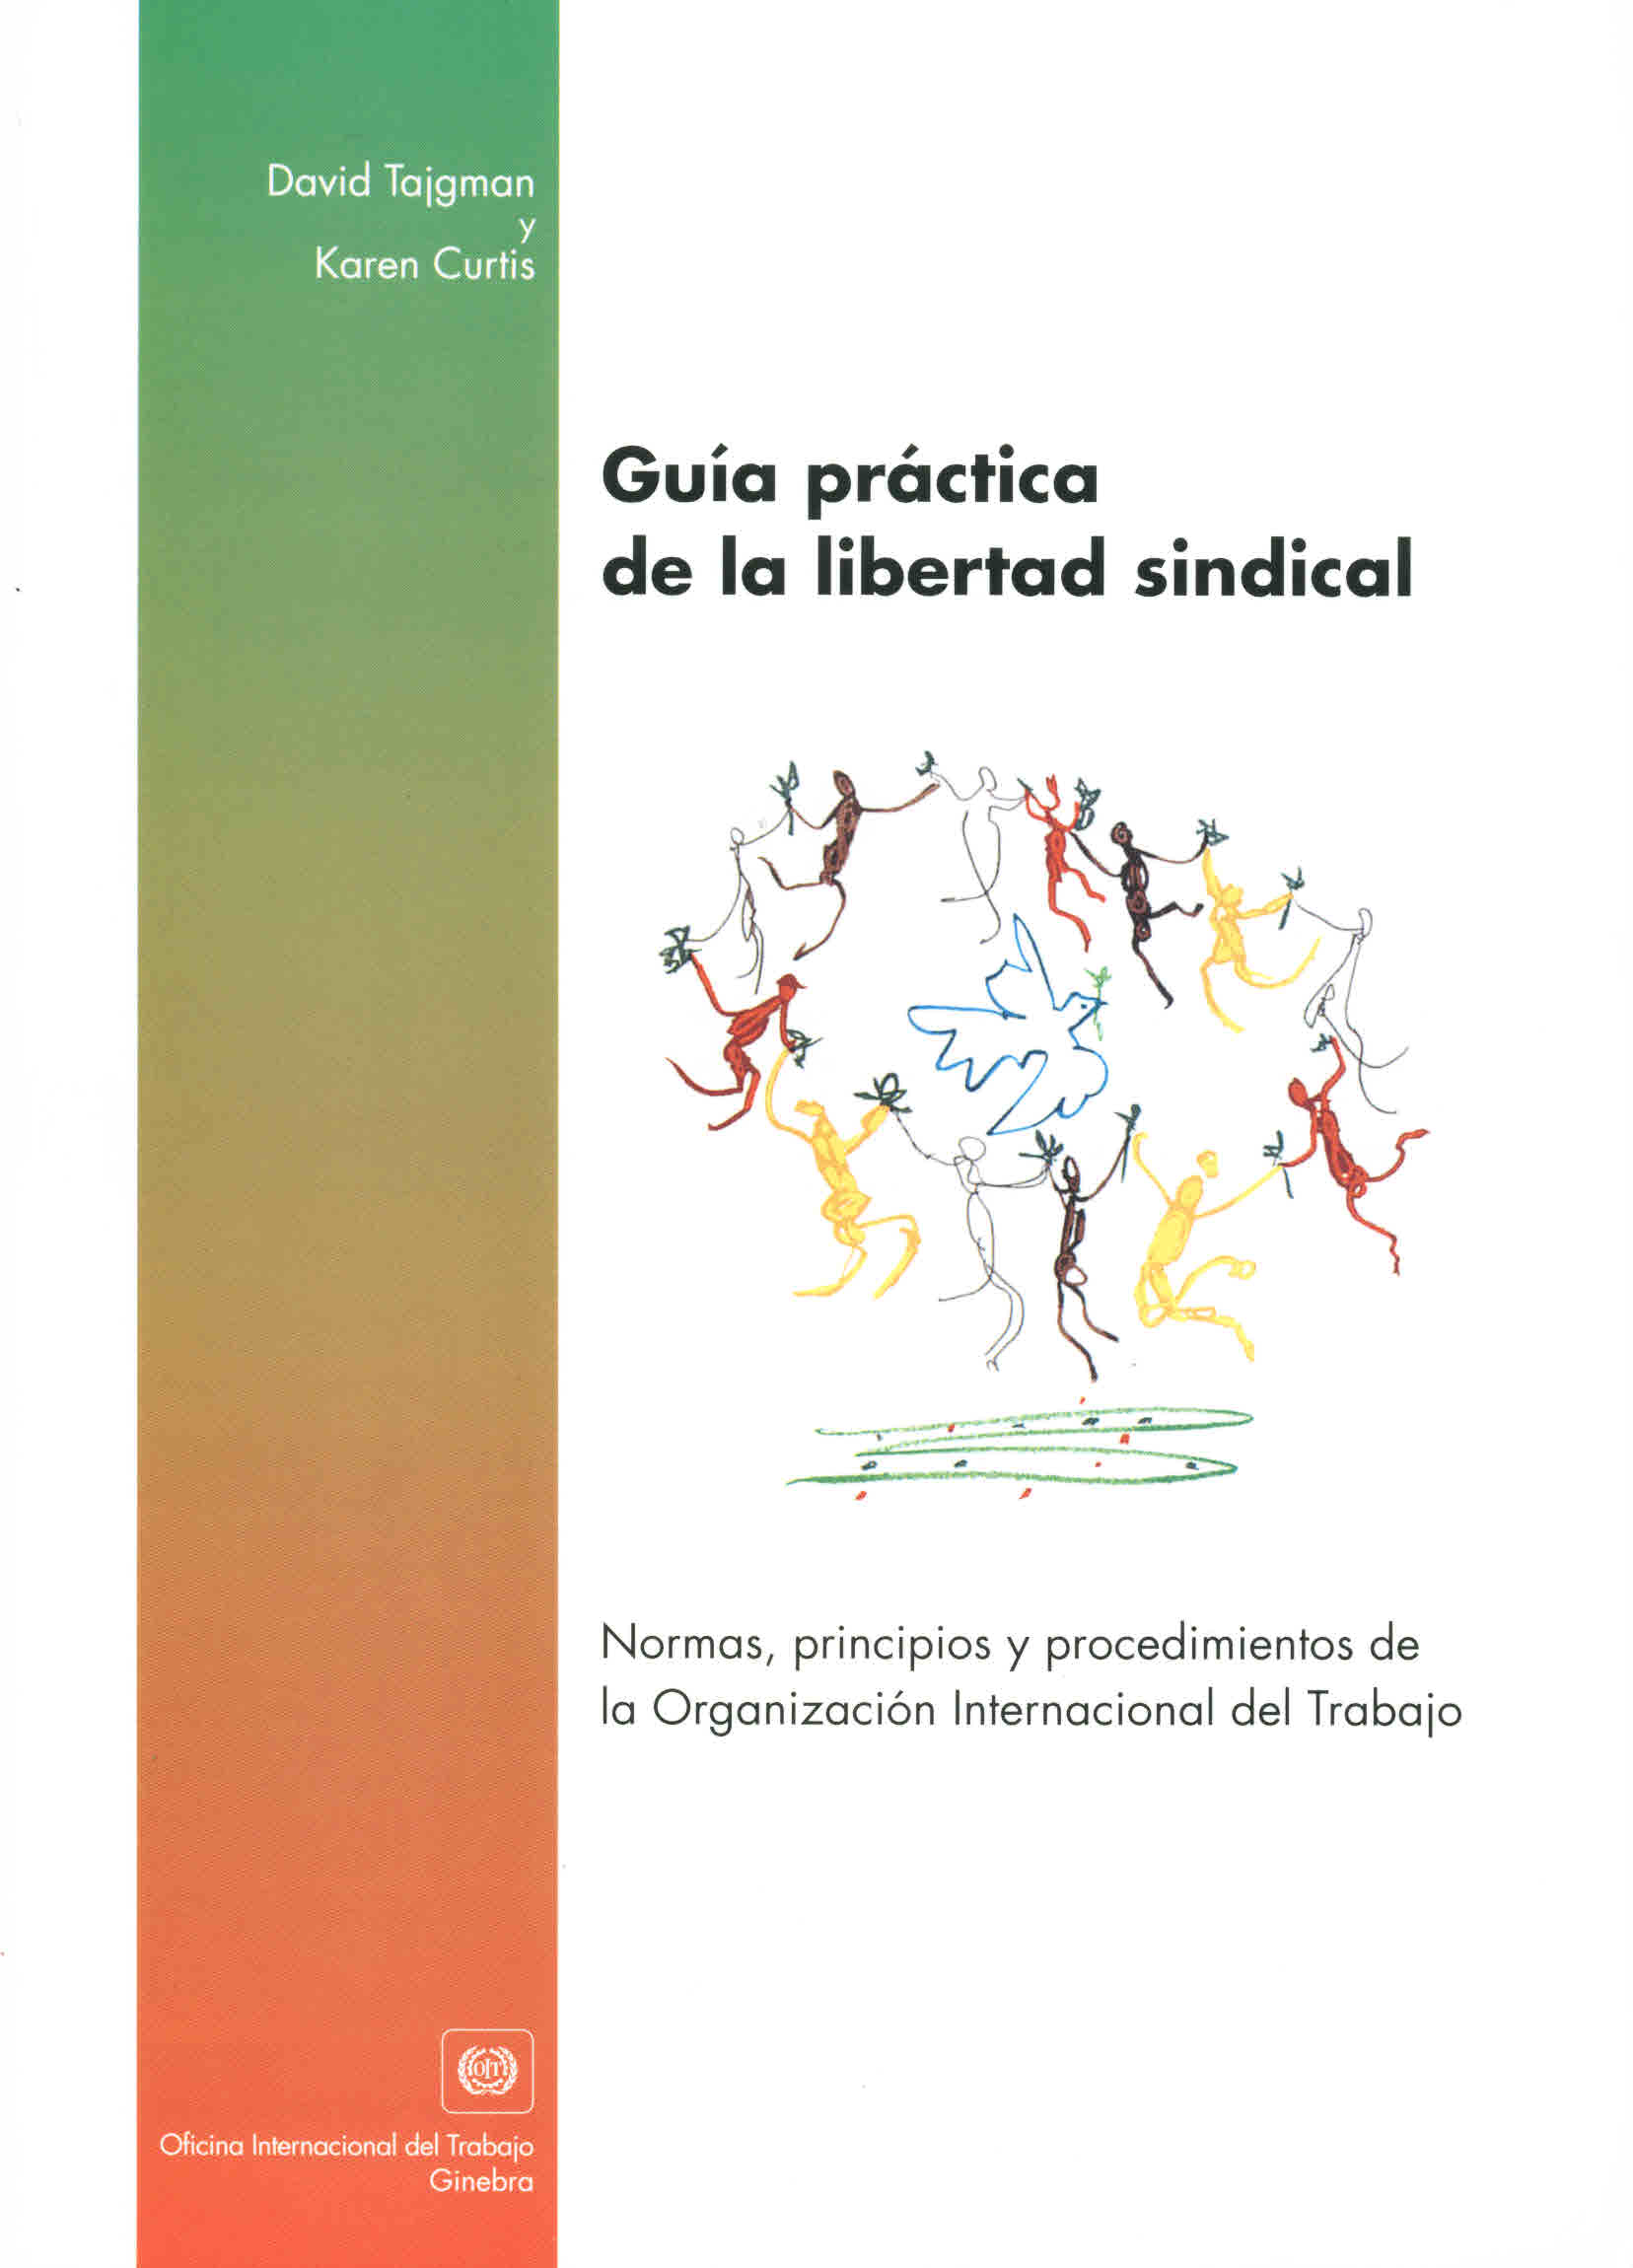 Guía práctica de la libertad sindical. Normas, principios y procedimientos de la Organización Internacional del trabajo